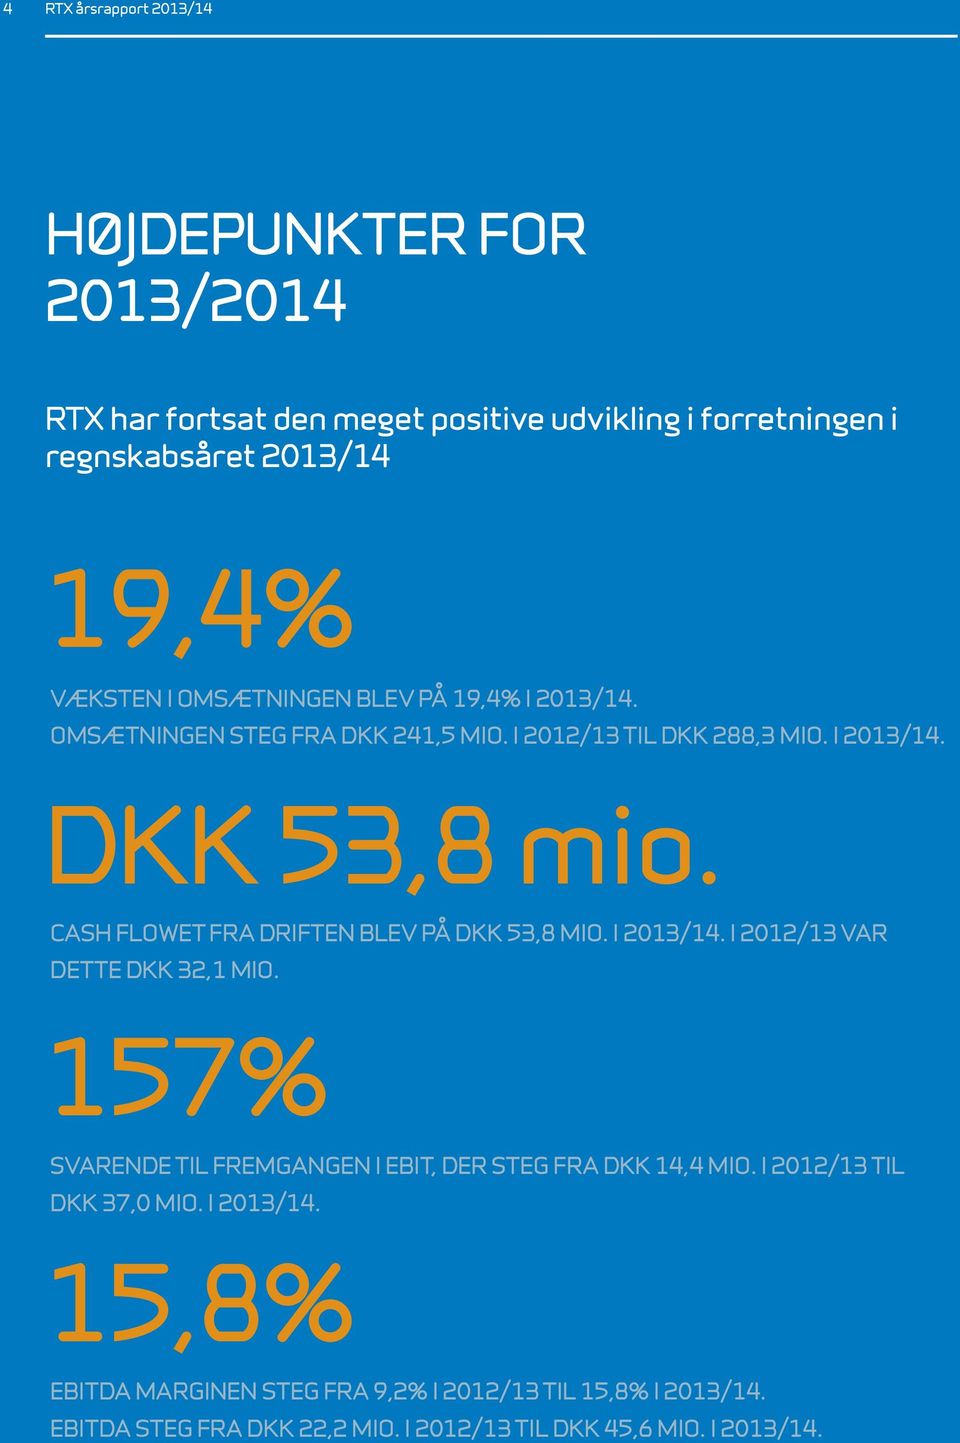 CASh flowet fra driften blev på DKK 53,8 mio. i 2013/14. I 2012/13 VAR dette dkk 32,1 mio.